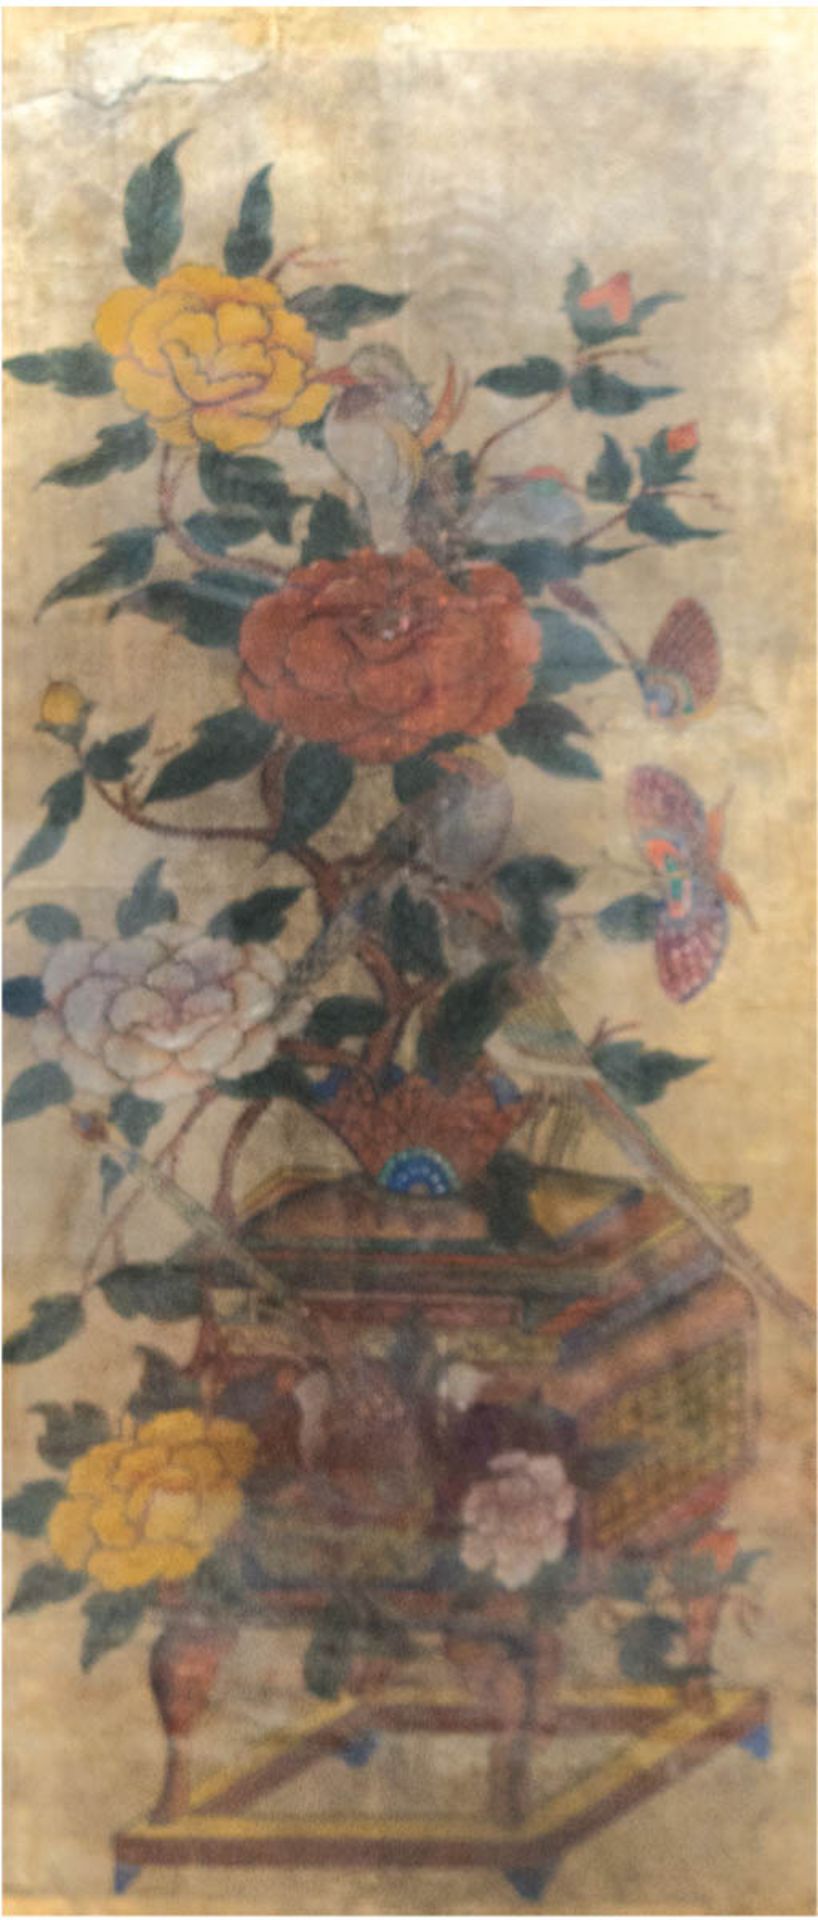 China 18./19. Jh. "Blumenarrangement mit Schmetterlingen und Vogel auf Tischchen",Mischtechnik/